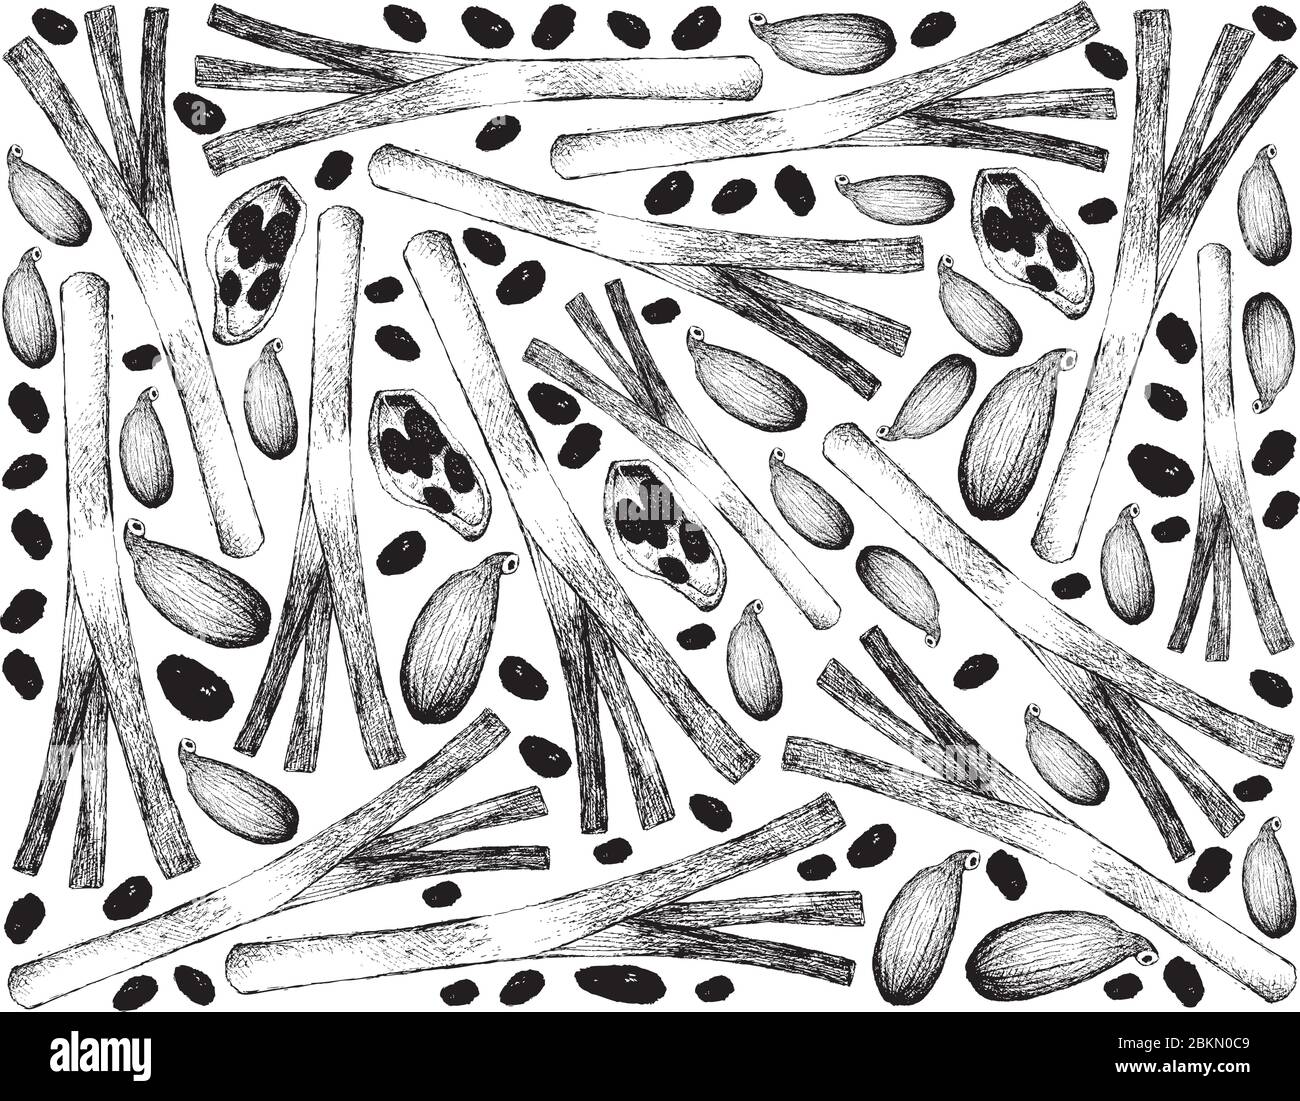 Kräuterpflanzen, Illustration Handgezeichnete Skizze von frischen Schalotten, spanischen Zwiebeln oder roten Zwiebeln mit Kardamom Pods zum Würzen beim Kochen verwendet. Stock Vektor